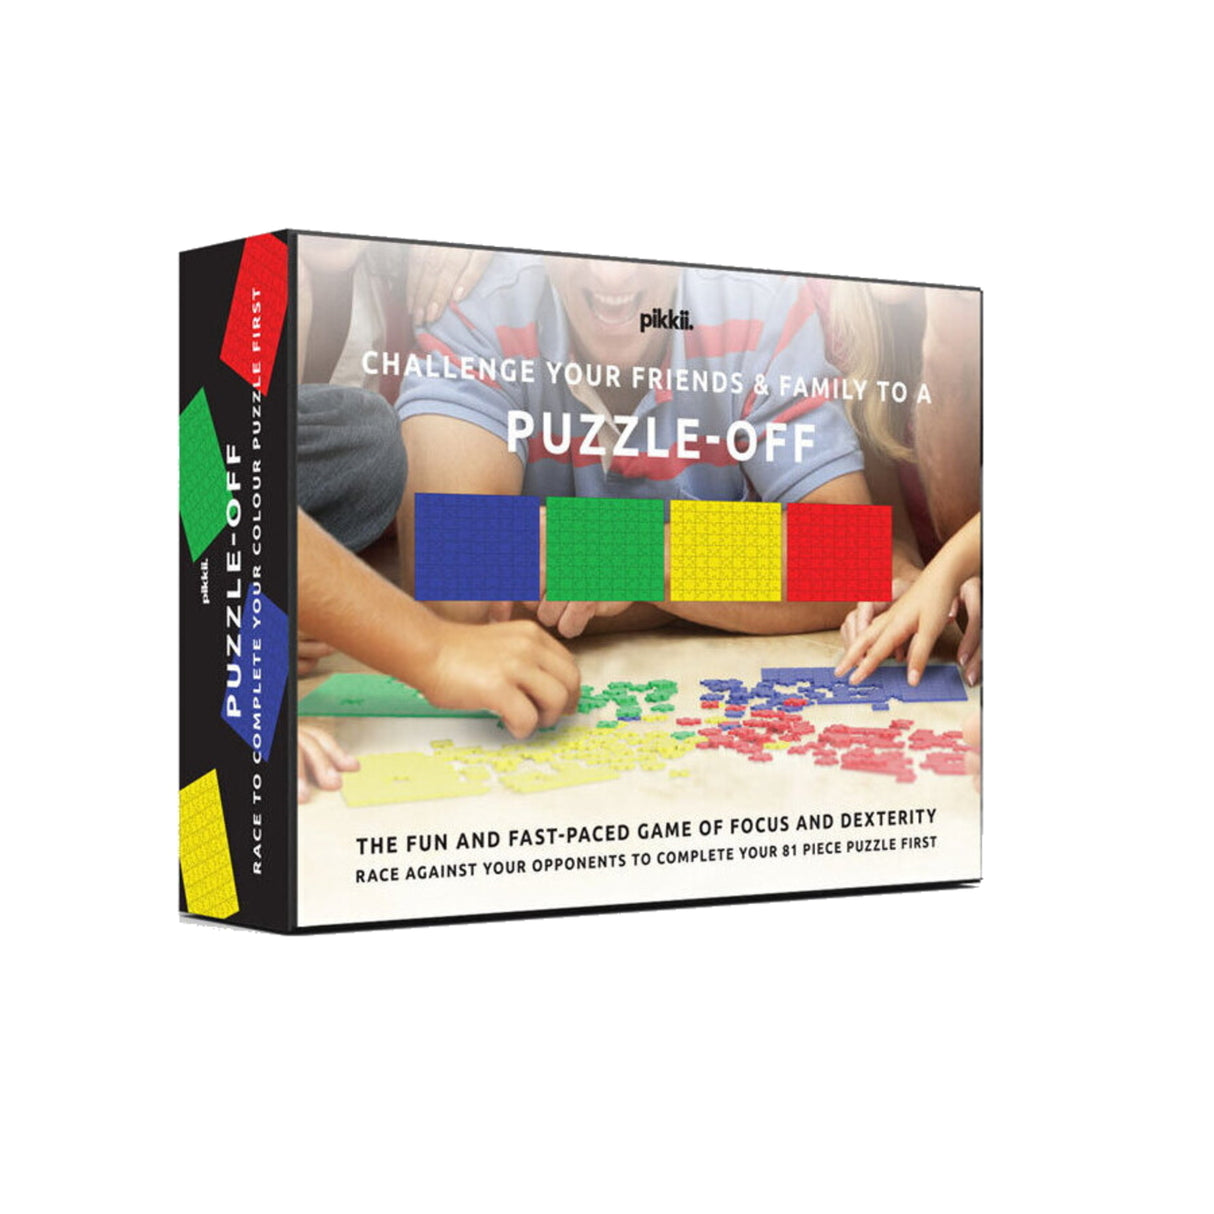 Puzzle Off Wettbewerb Puzzles im 4er Set mit insgesamt 324 Teilen